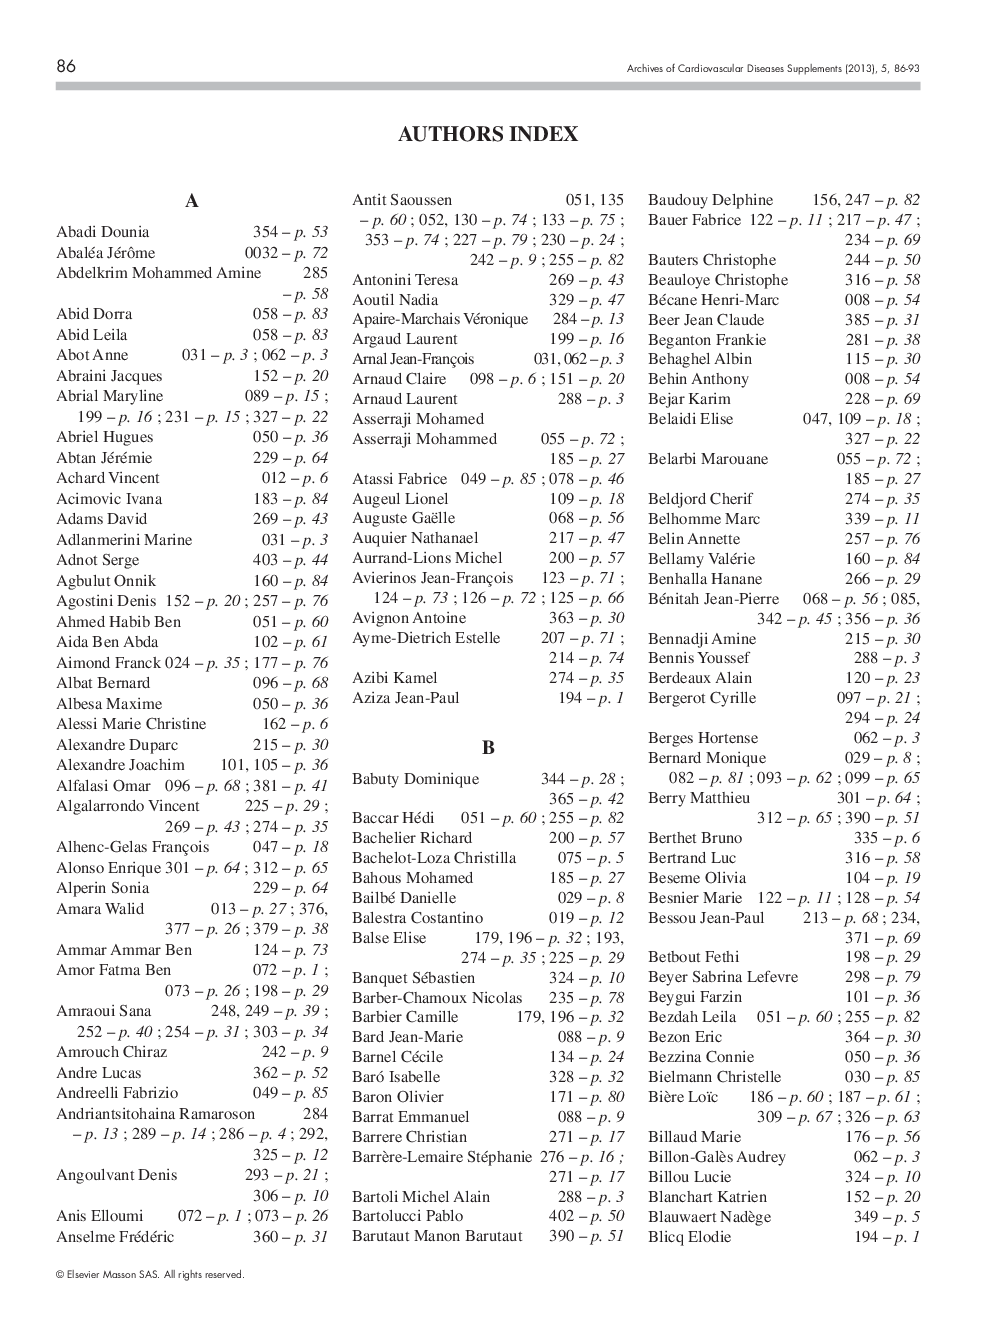 Authors index